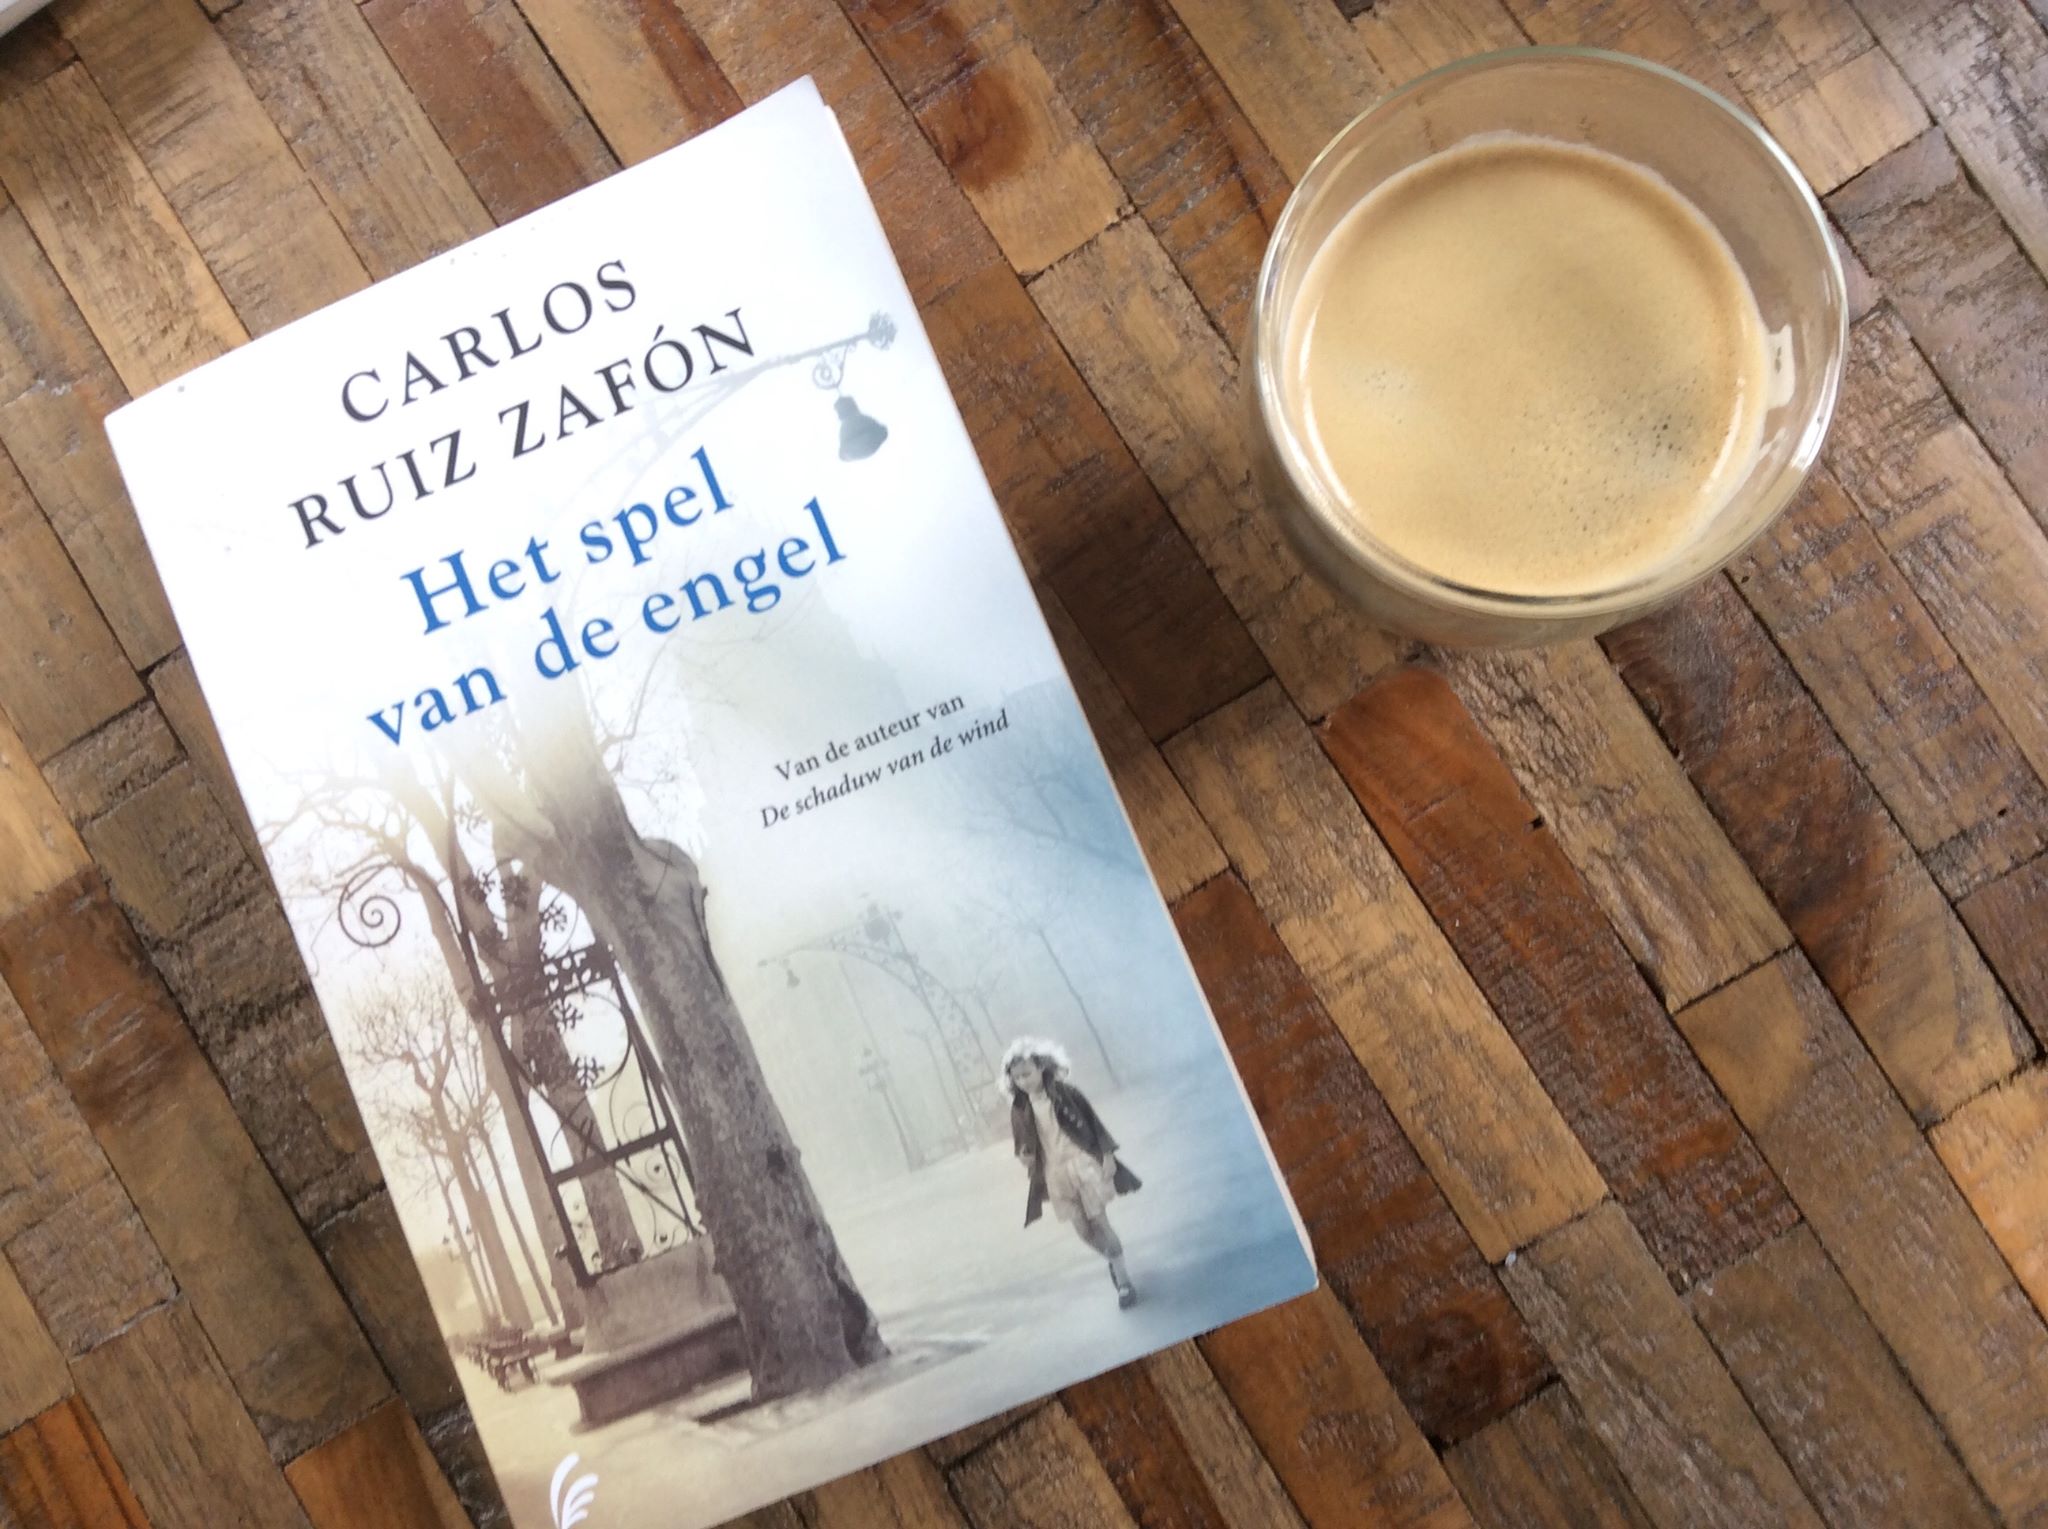 Het spel van de engel van Carlos Ruiz Zafon Recensie by Book Barista